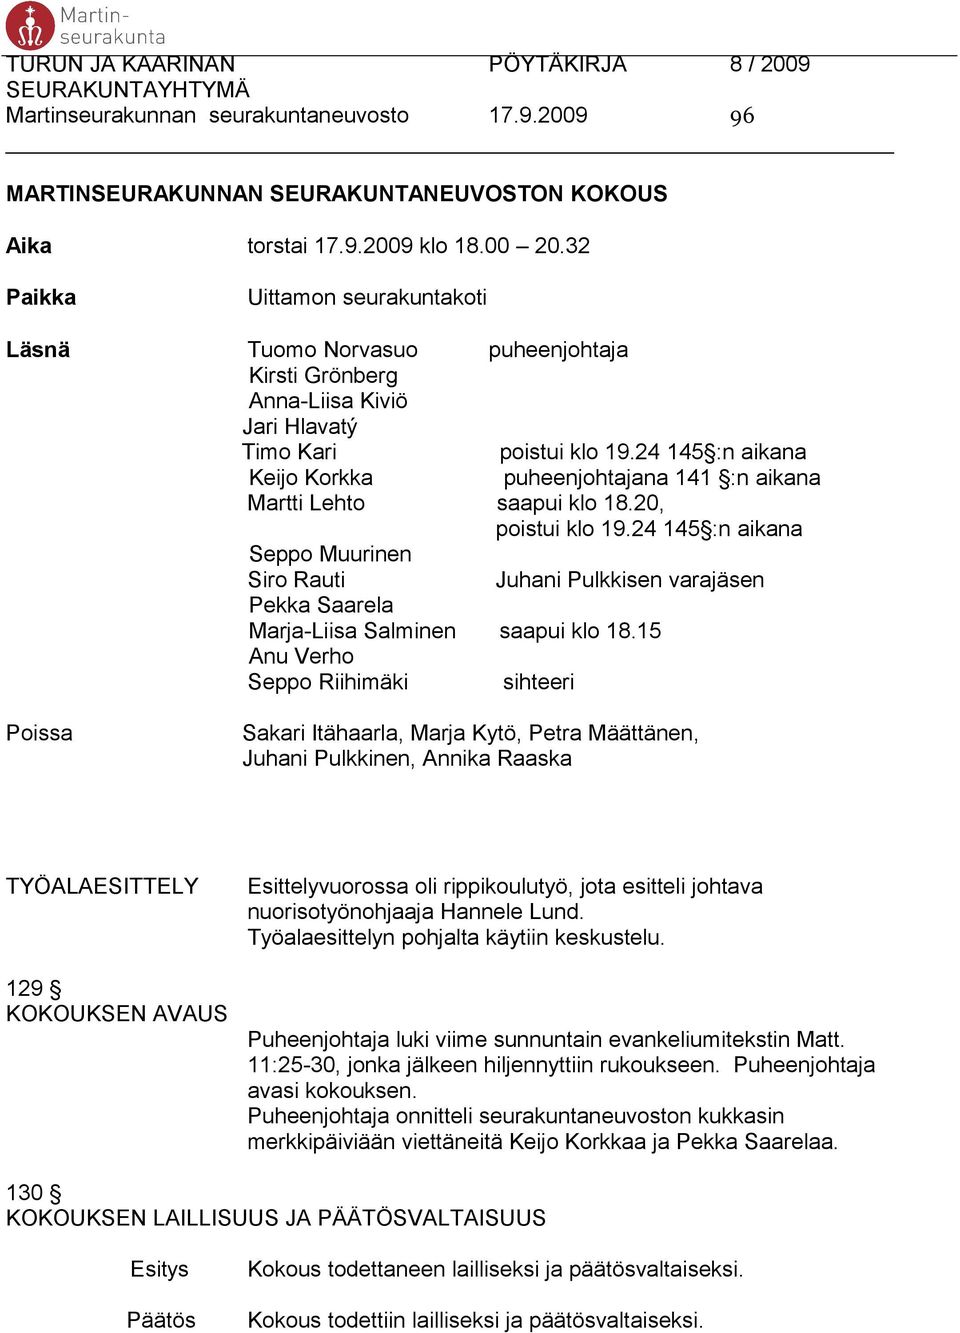 24 145 :n aikana Keijo Korkka puheenjohtajana 141 :n aikana Martti Lehto saapui klo 18.20, poistui klo 19.24 145 :n aikana Seppo Muurinen Siro Rauti Pekka Saarela Marja-Liisa Salminen saapui klo 18.